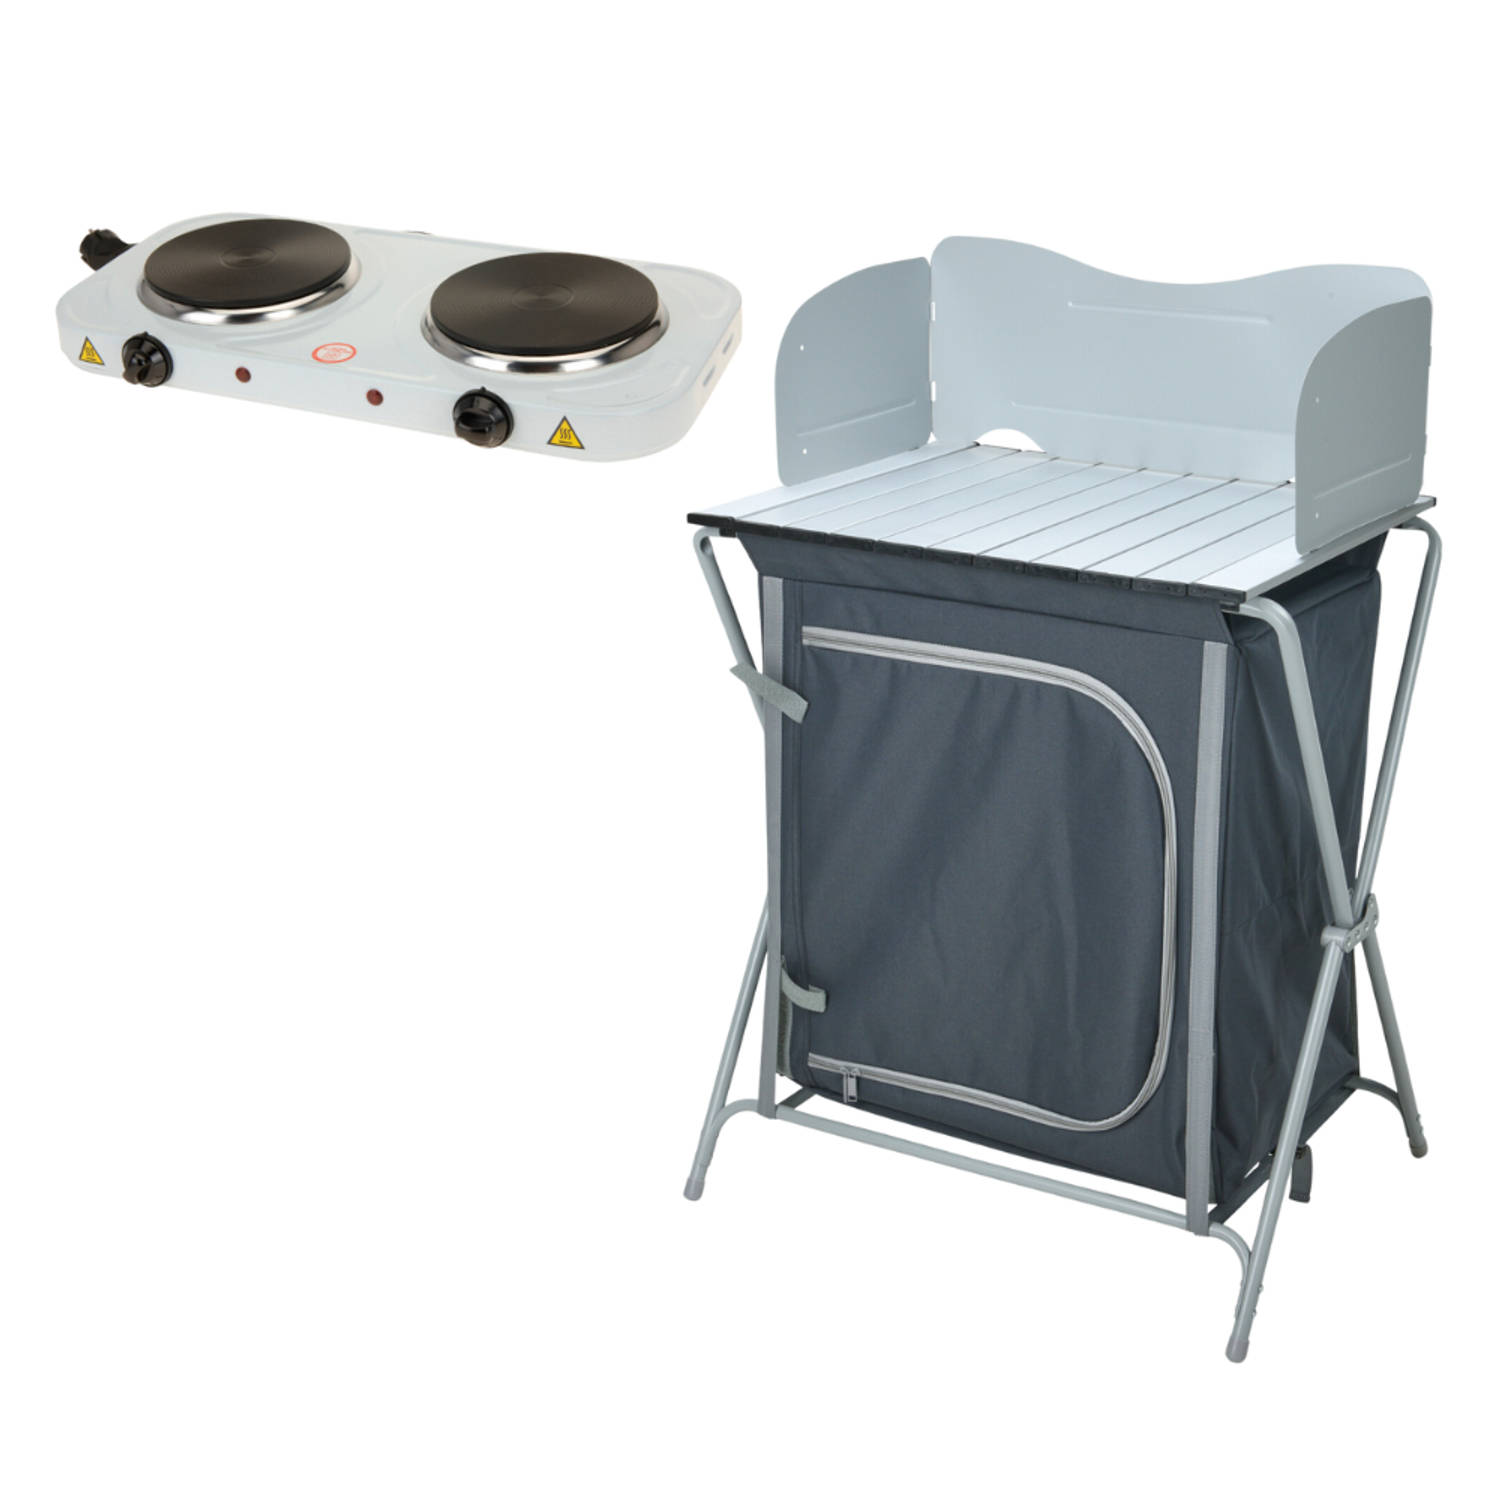 HIXA Campingkast Campingkeuken Opbouwbaar met Electrische Kookplaat 60x45x64cm Grijs